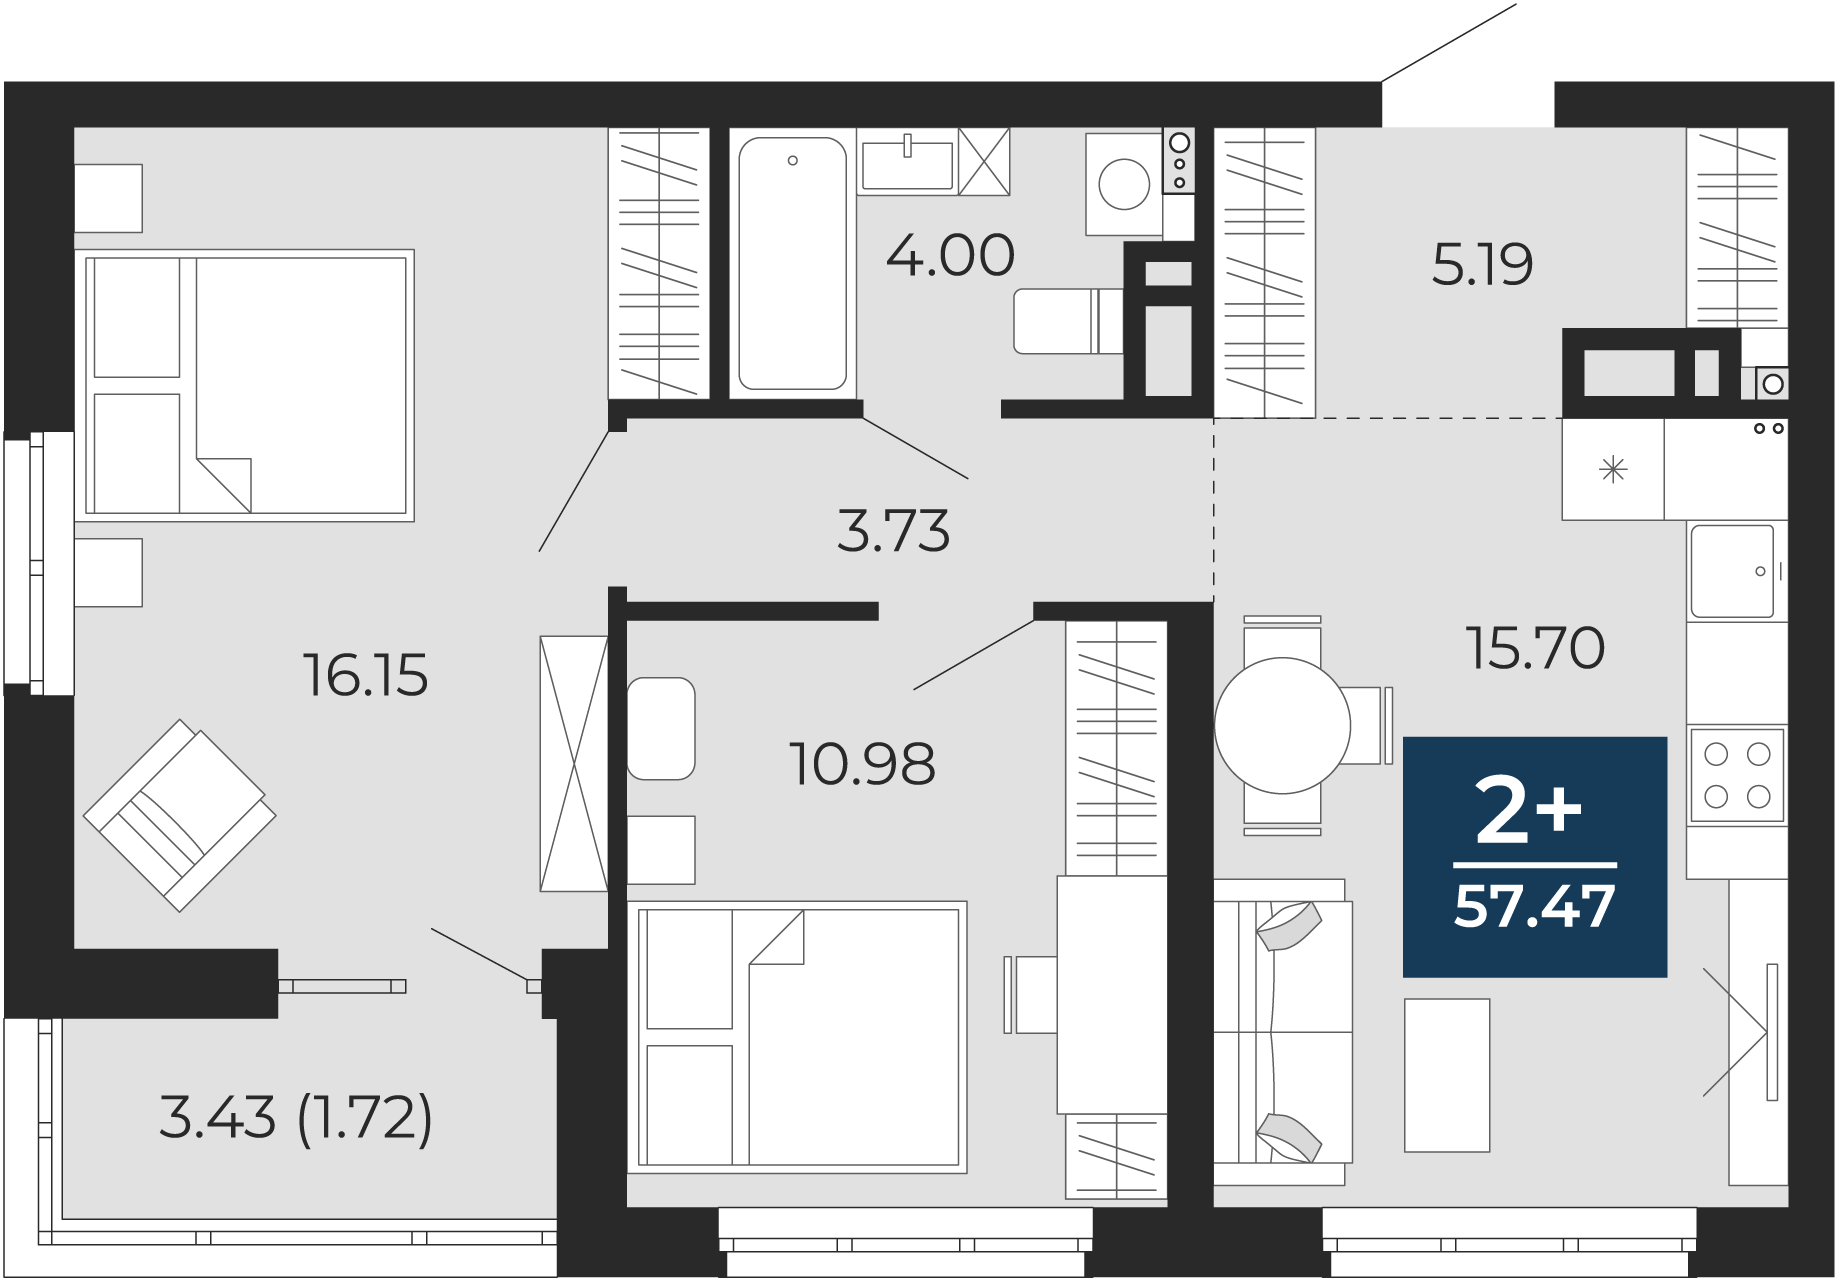 Квартира № 9, 2-комнатная, 57.47 кв. м, 2 этаж